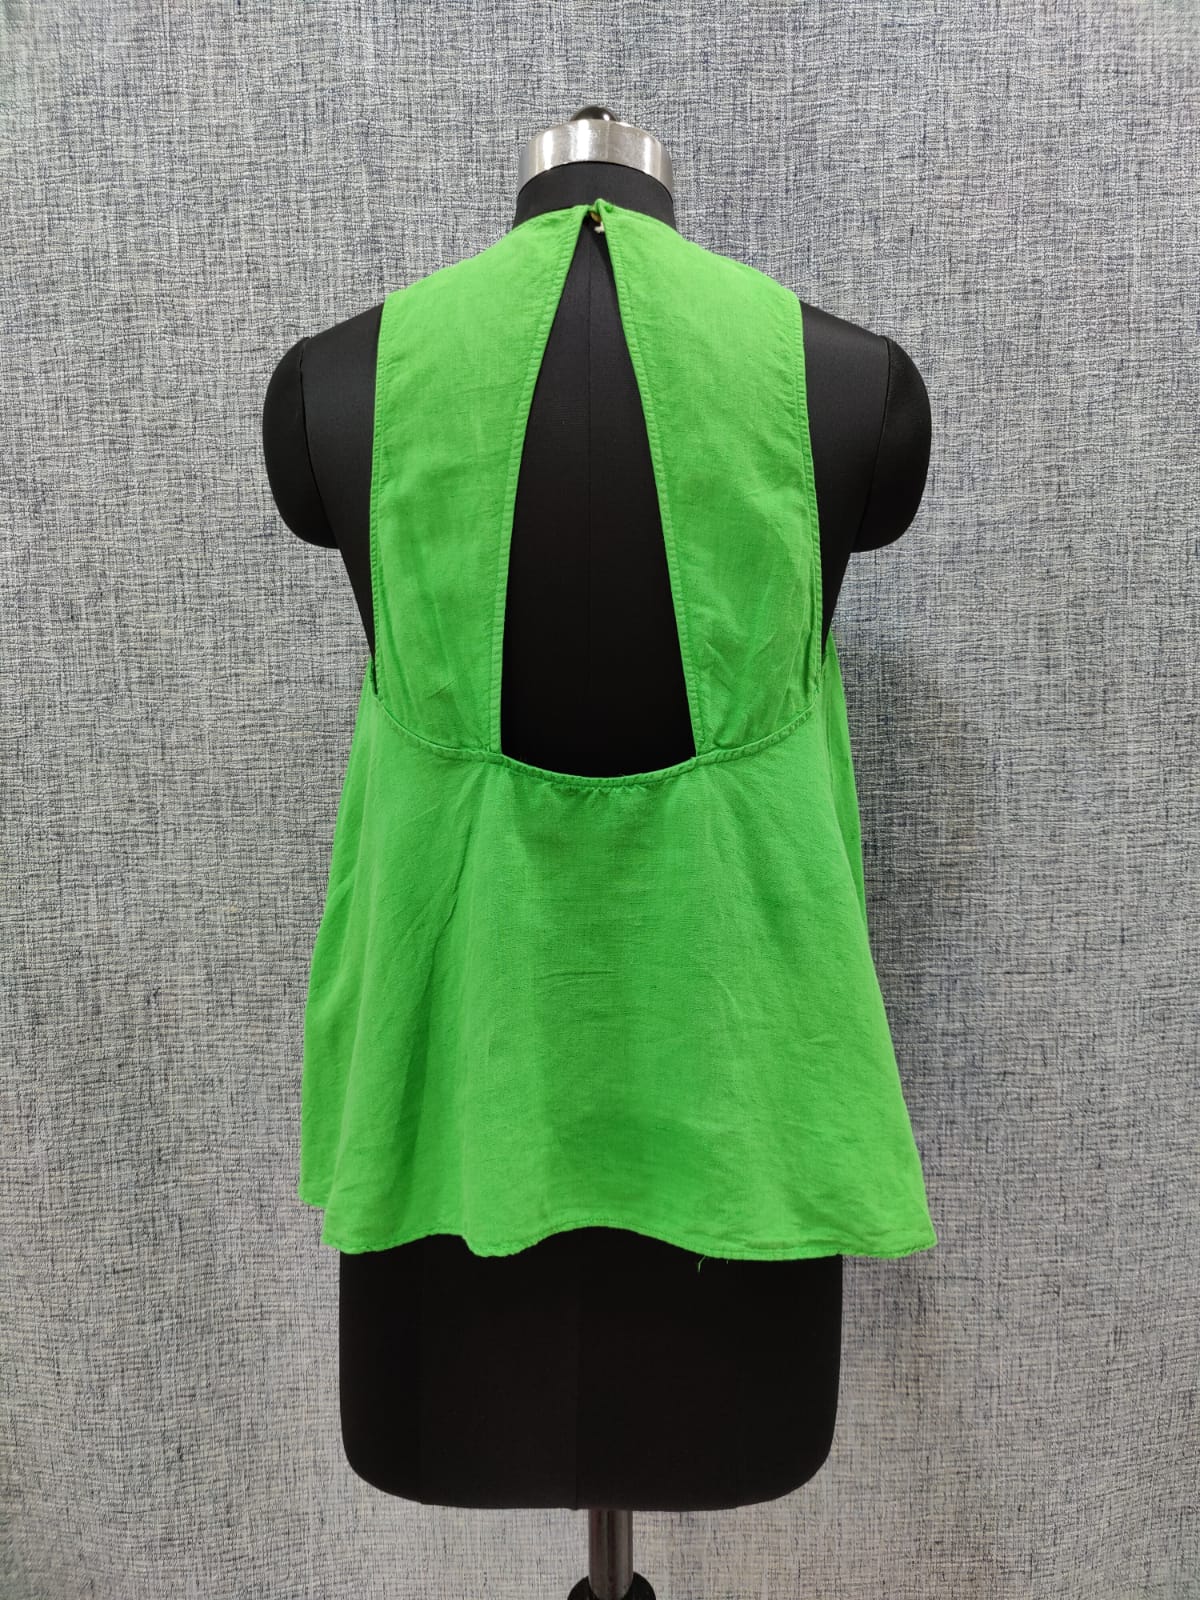 ZARA Pintuck Detail Sleeveless Green Top | Relove